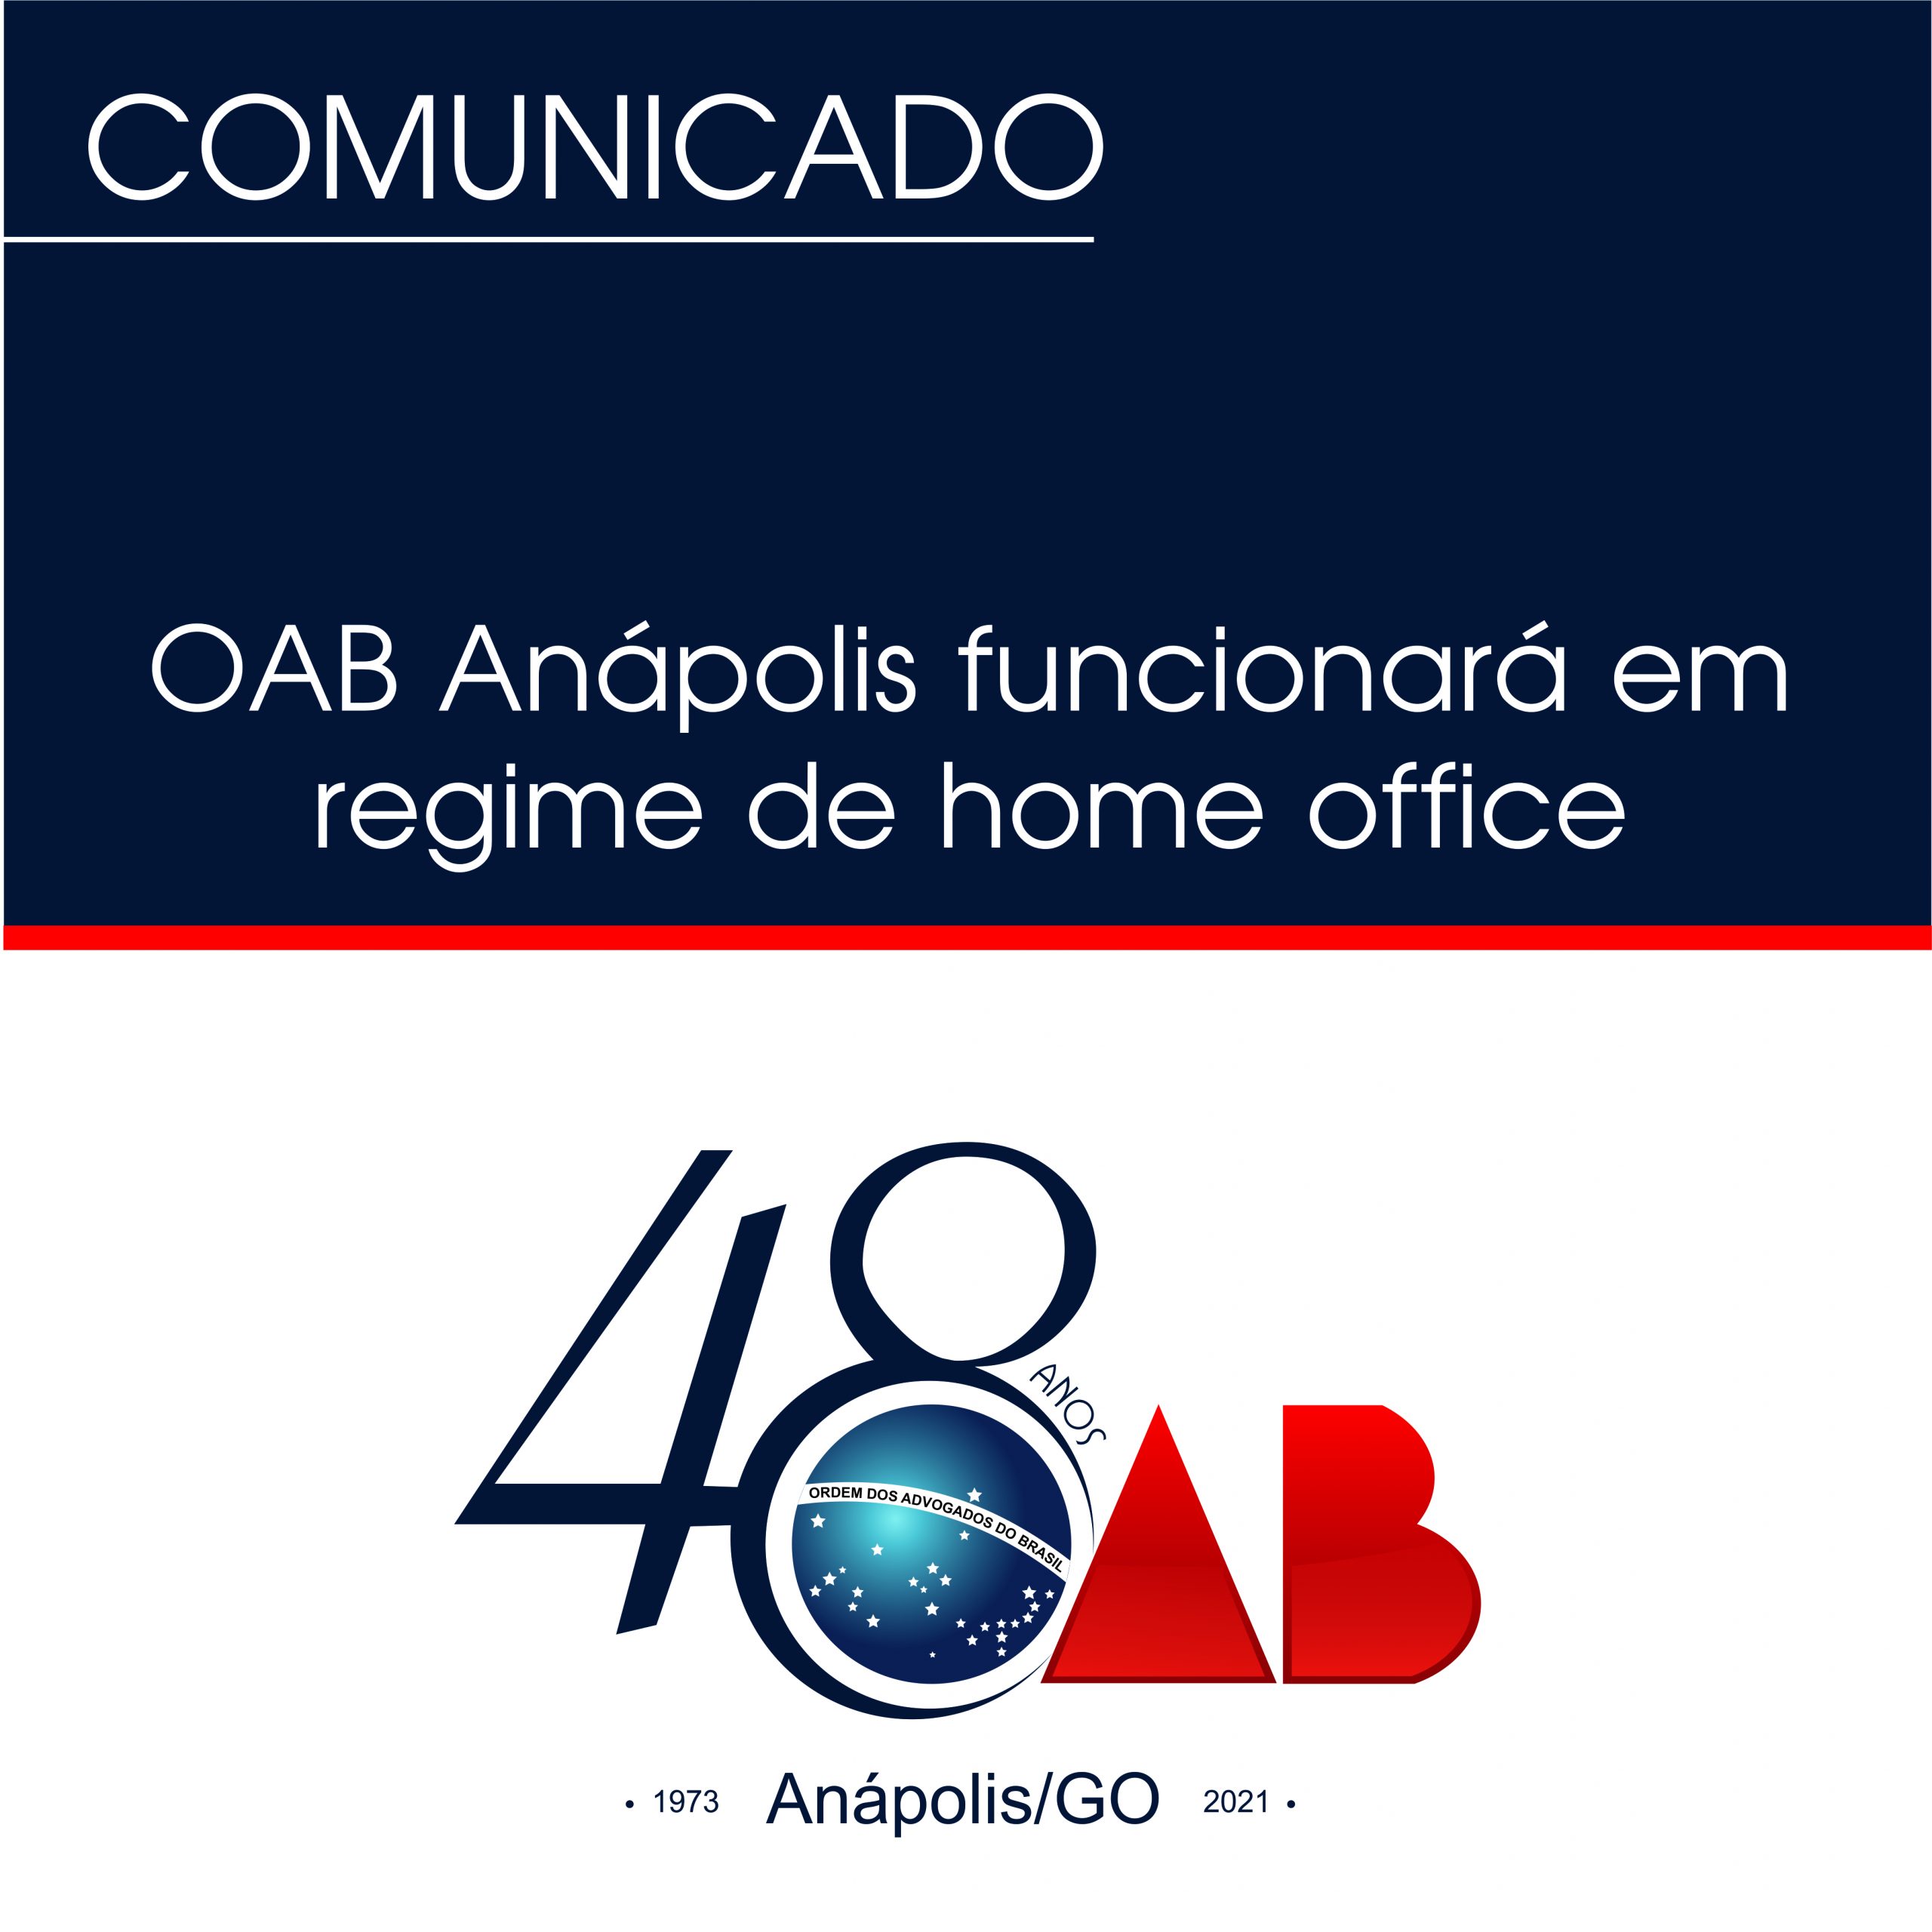 OAB Anápolis funcionará em regime de home office